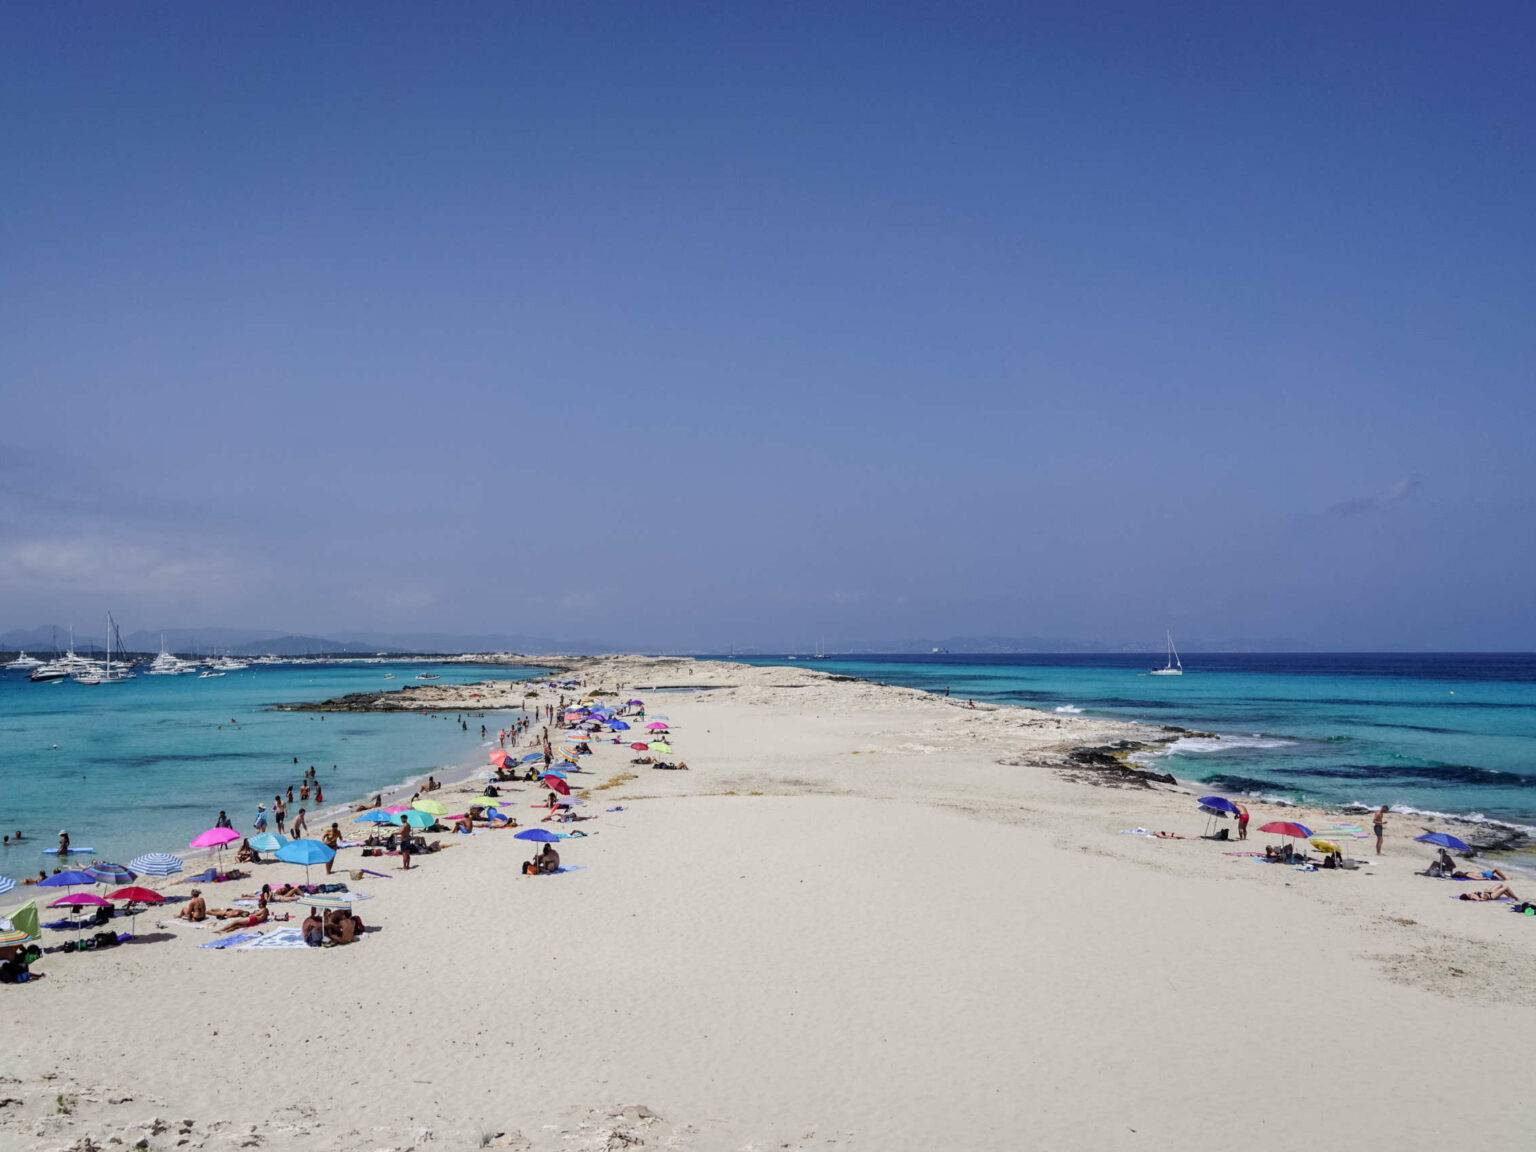 Die Playa de ses Illetes auf Formentera ist eine der wichtigsten Sehenswürdigkeiten, denn der weiße Sandstrand liegt inmitten von türkisblauem Meer und wurde bereits zum schönsten Europas gekürt.